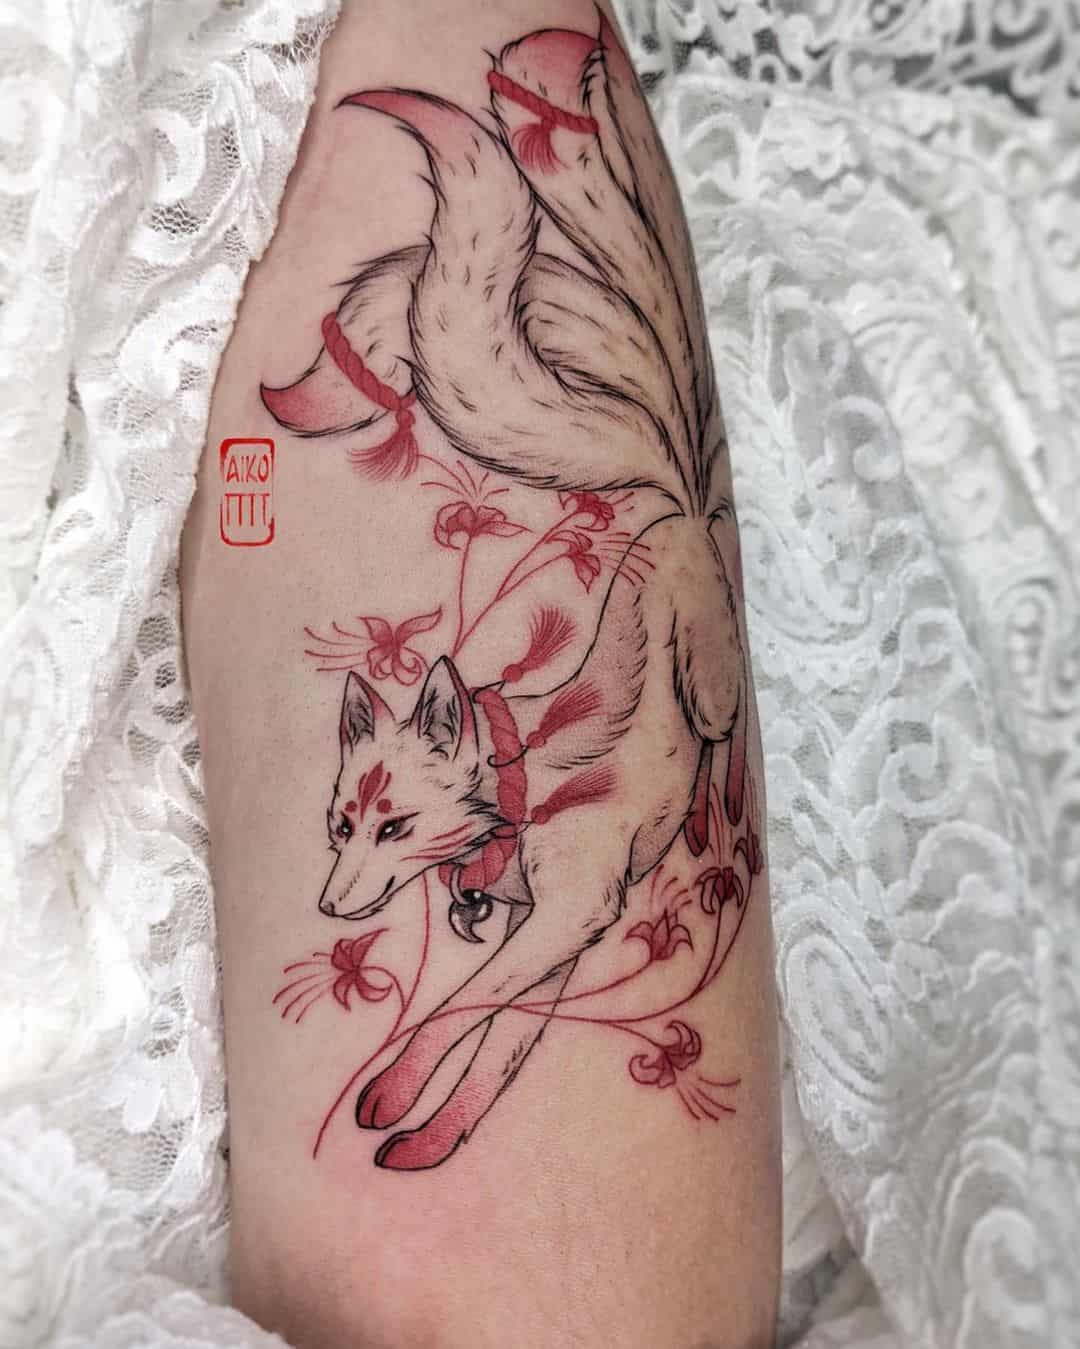 Wonderful fox tattoo by aiko tttt